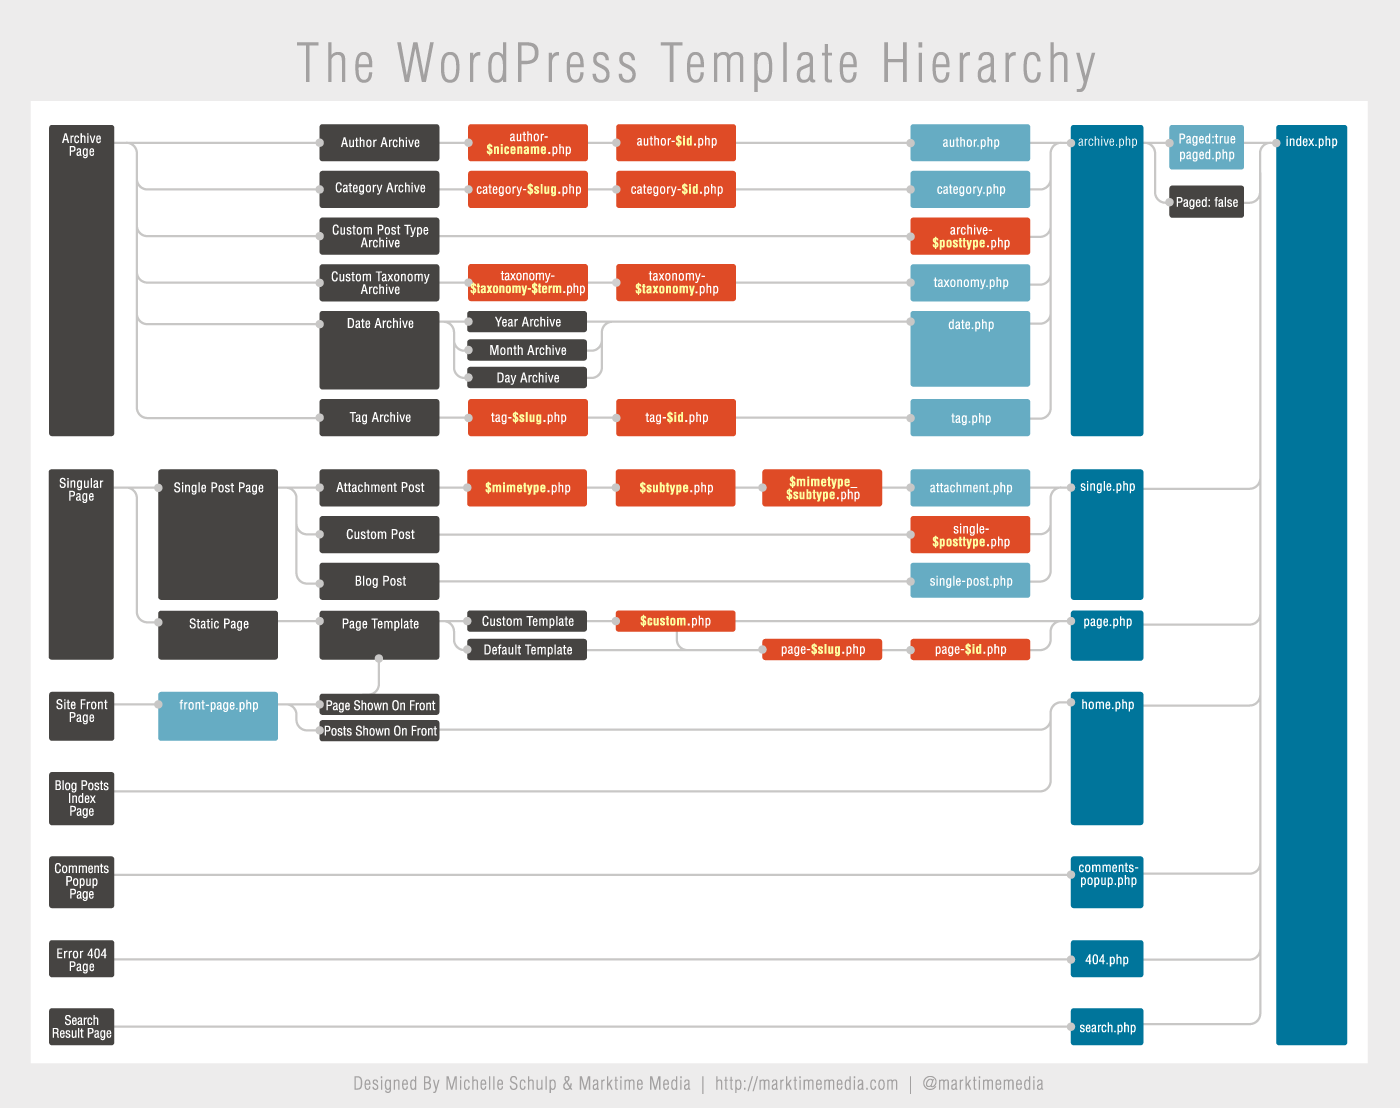 一张图看懂 WordPress 模板层次结构信息图 泪雪博客